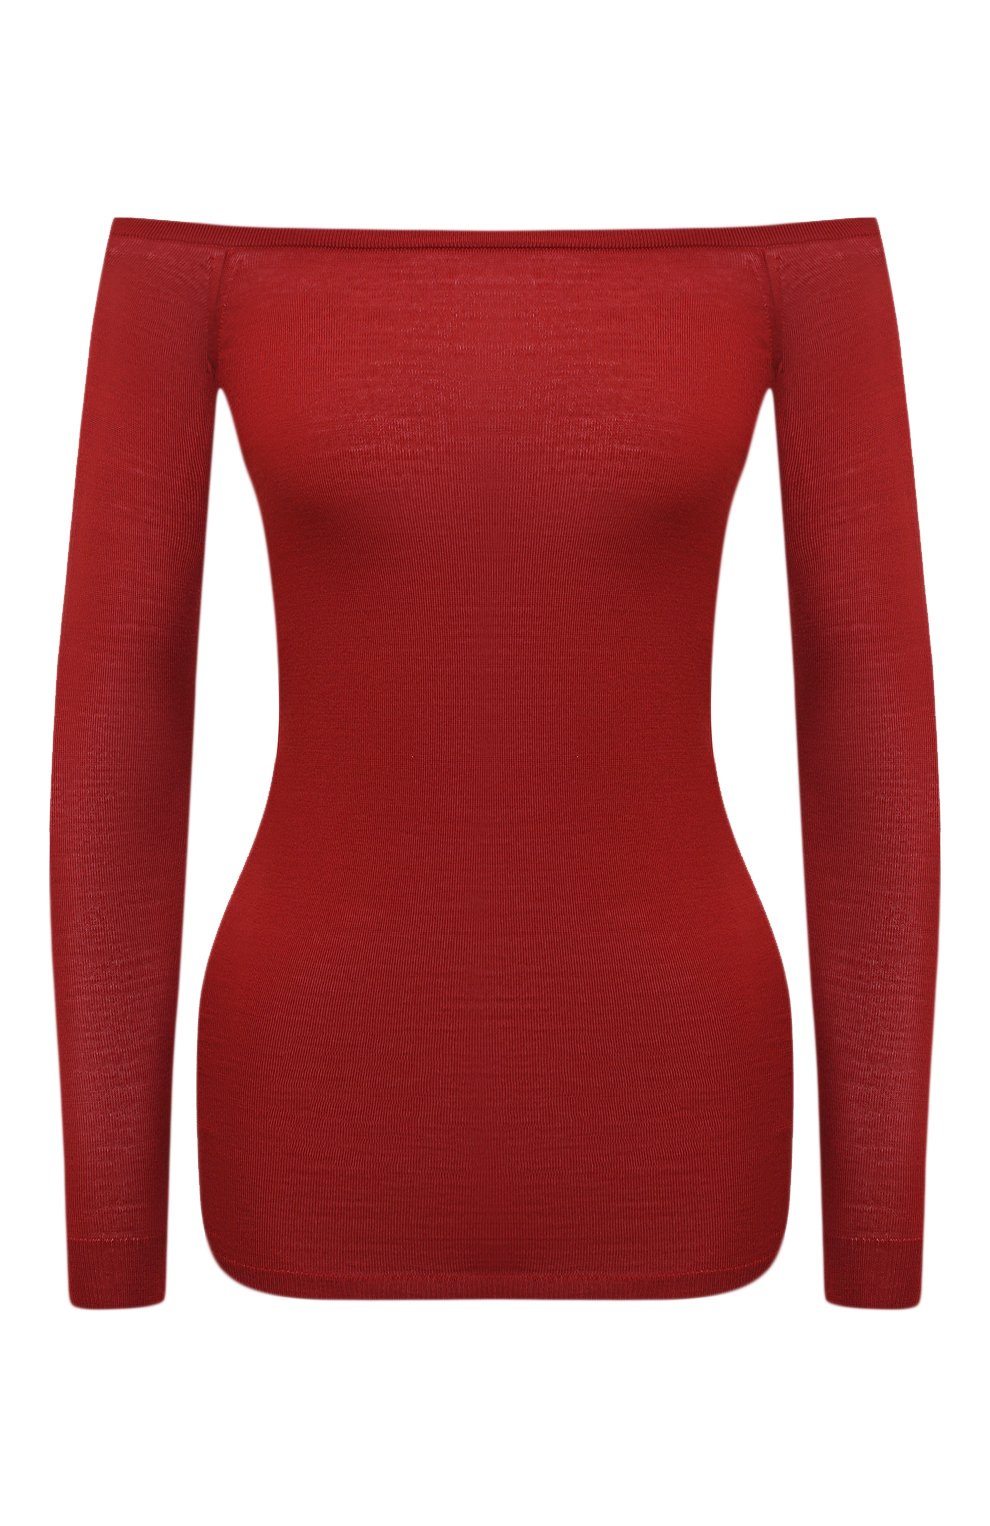 Трикотаж Stella McCartney, Шерстяной пуловер Stella McCartney, Италия, Красный, Шерсть: 100%;, 10372862  - купить